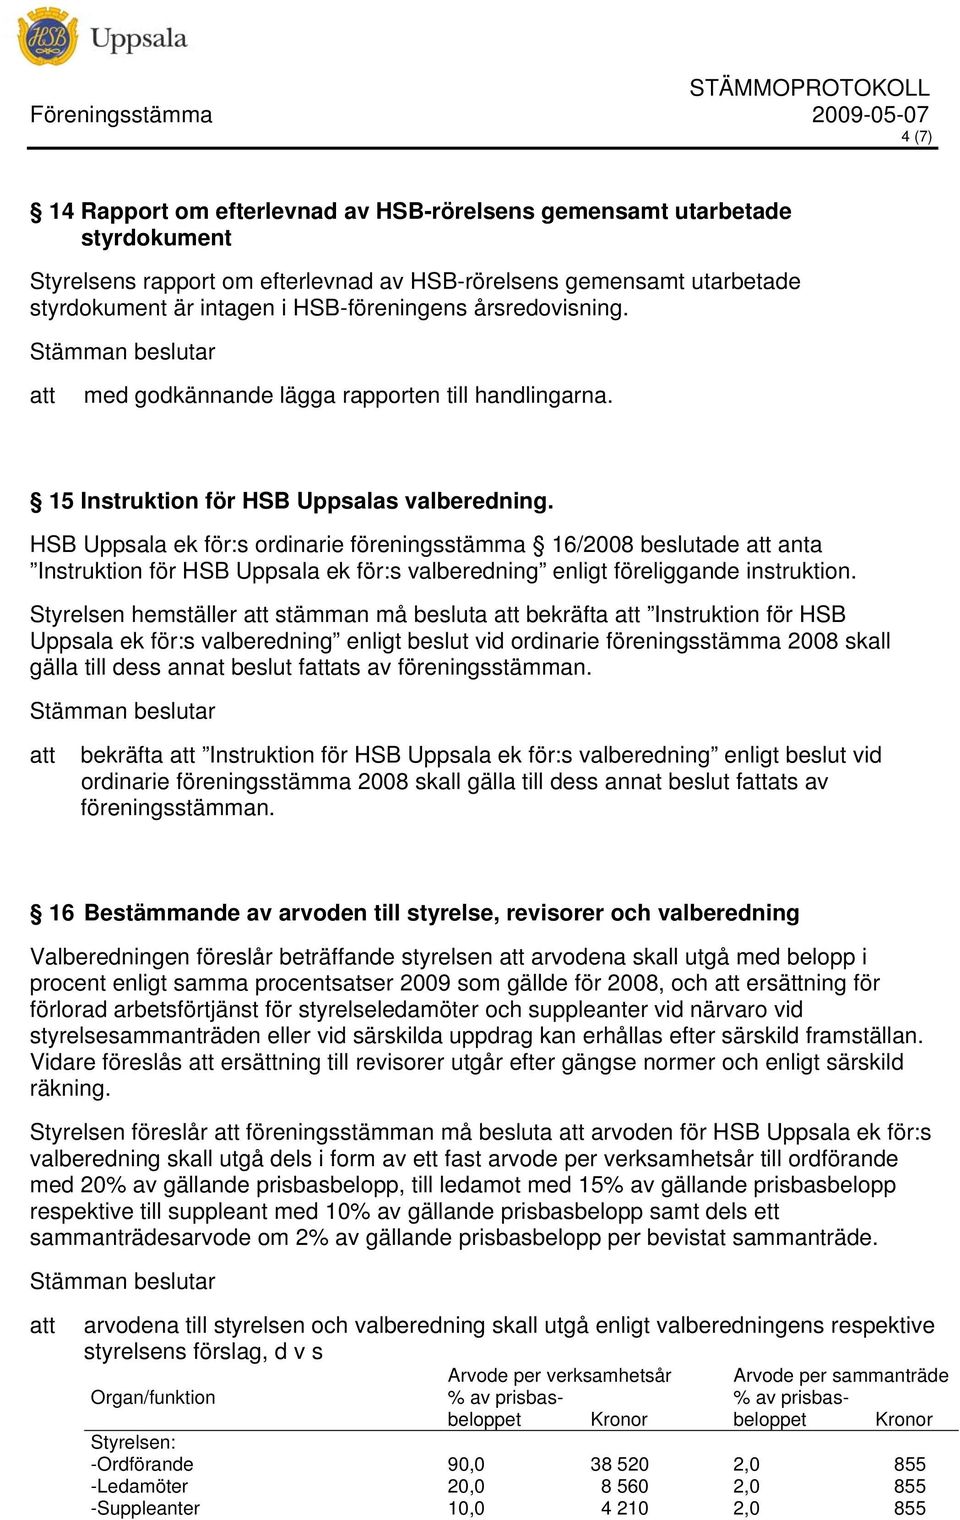 HSB Uppsala ek för:s ordinarie föreningsstämma 16/2008 beslutade anta Instruktion för HSB Uppsala ek för:s valberedning enligt föreliggande instruktion.